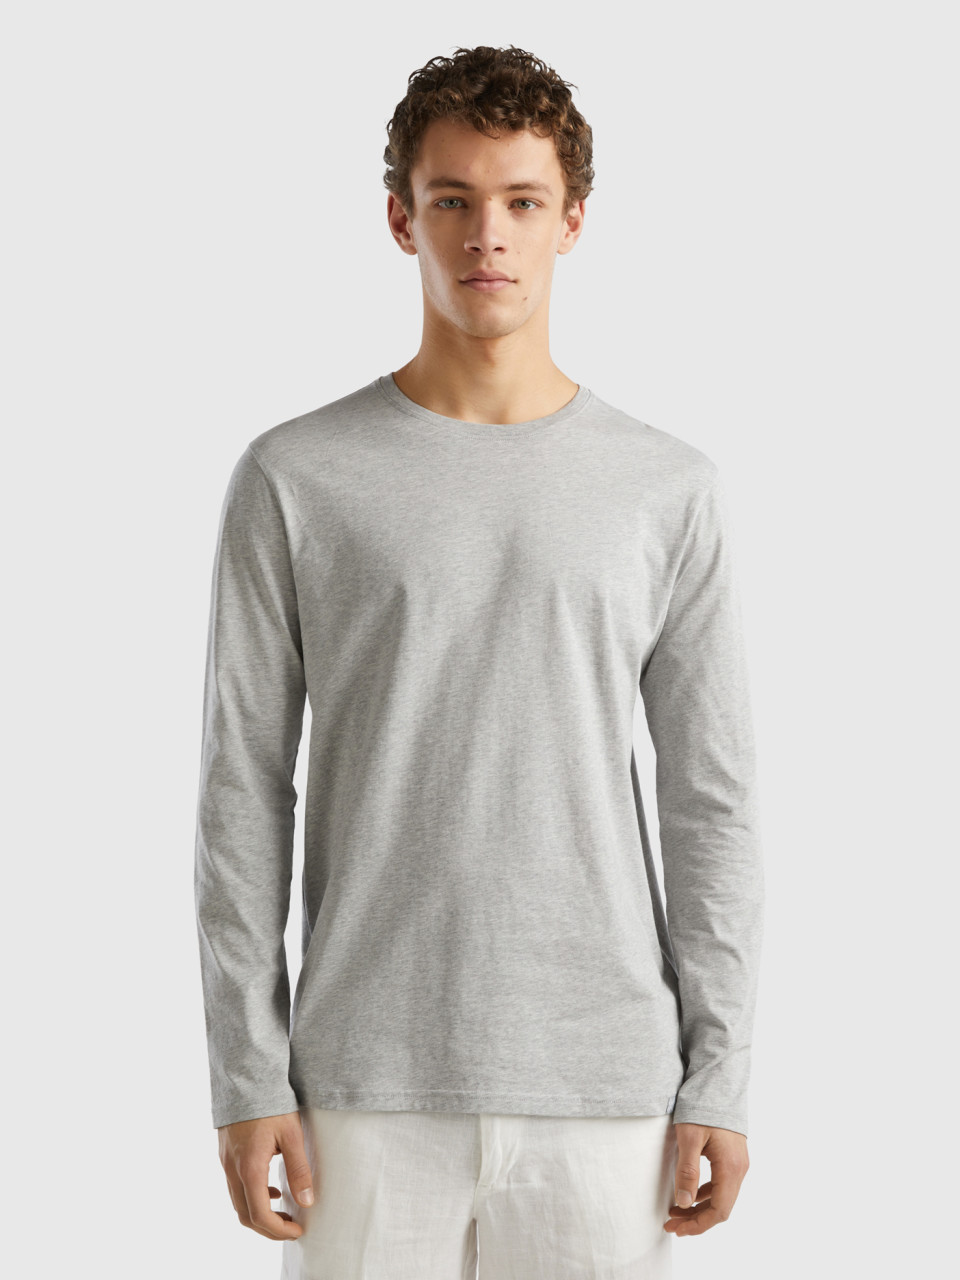 Benetton, Long Sleeve Pure Cotton T-shirt, Light Gray, Men